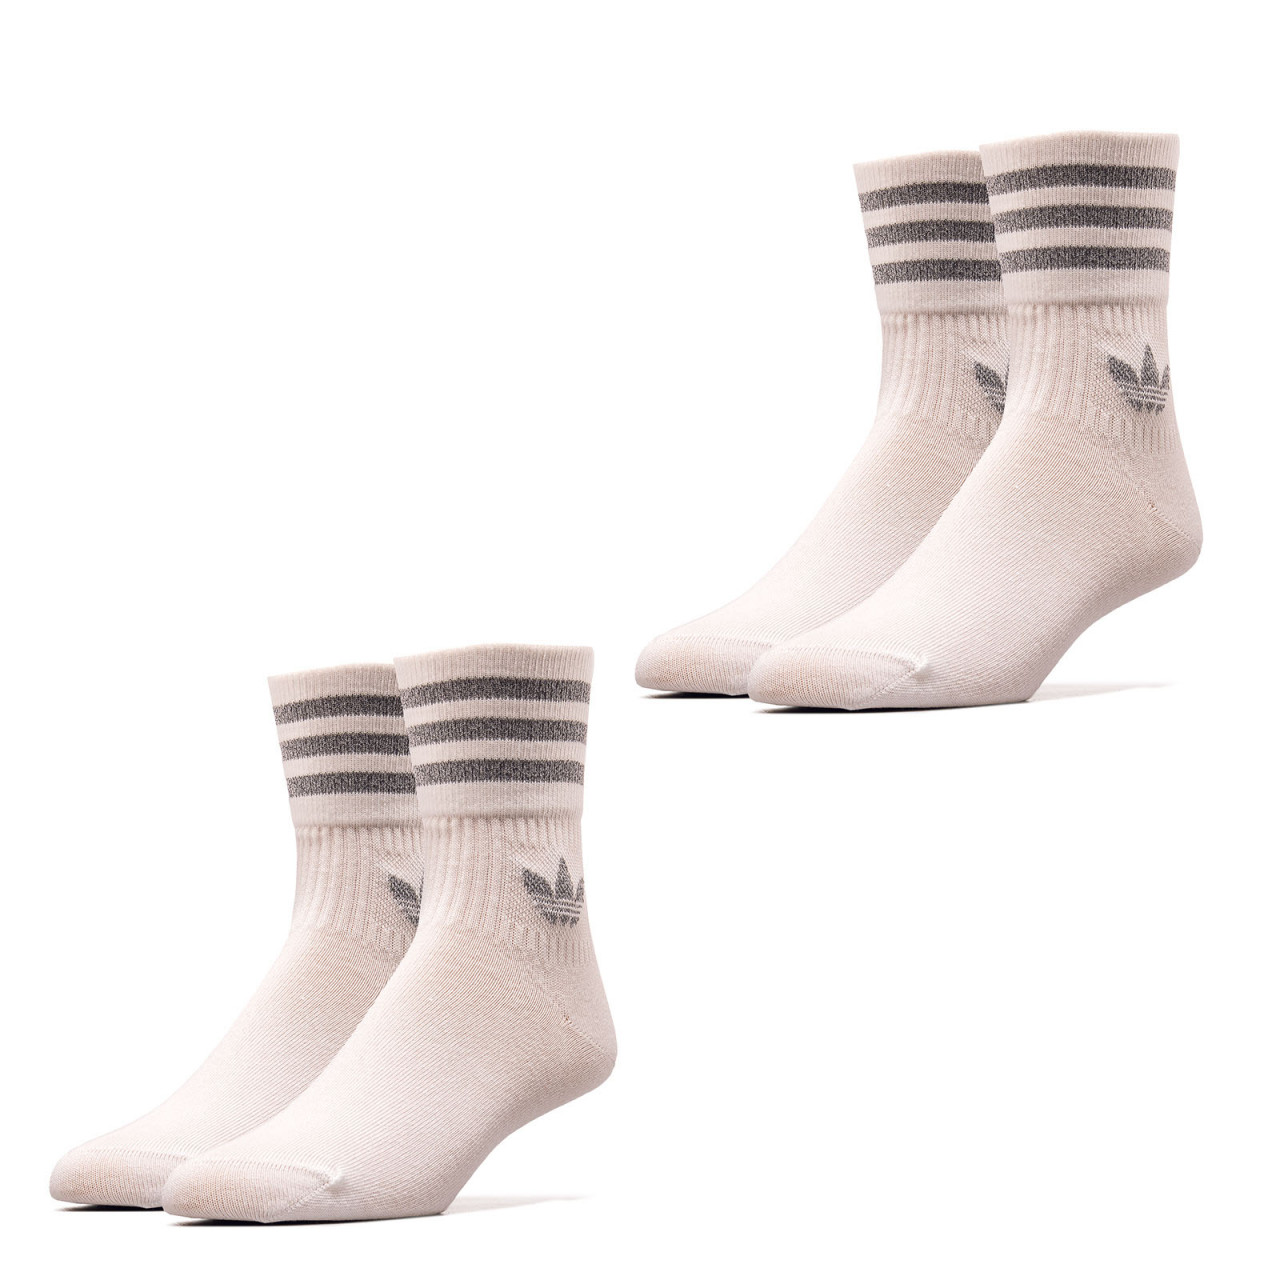 Socken 2er Pack - Crew Socks - White Reflective Silver